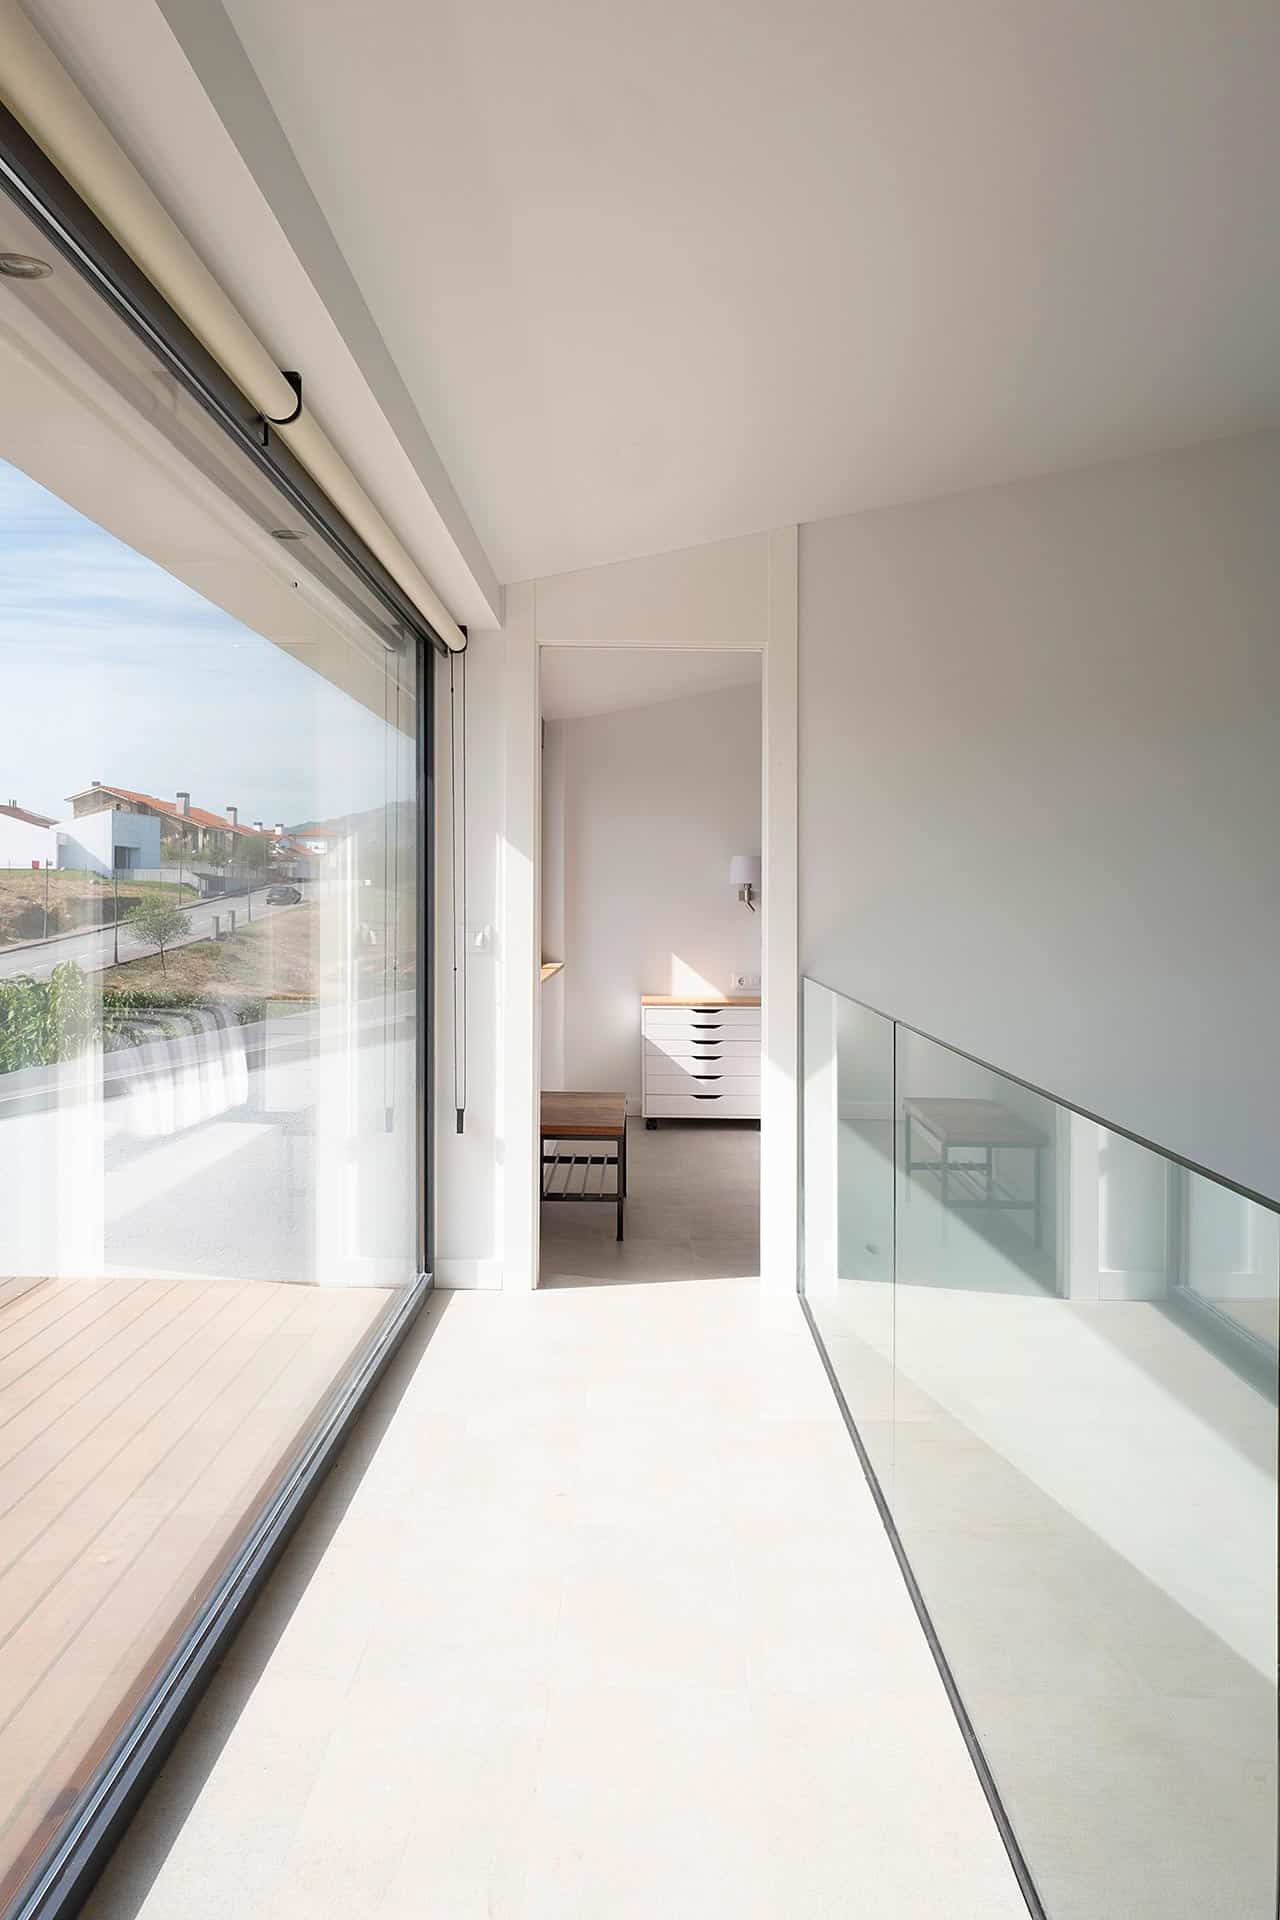 Interior minimalista en casa moderna en blanco y cristal diseñado por Moah Arquitectos en Cantabria